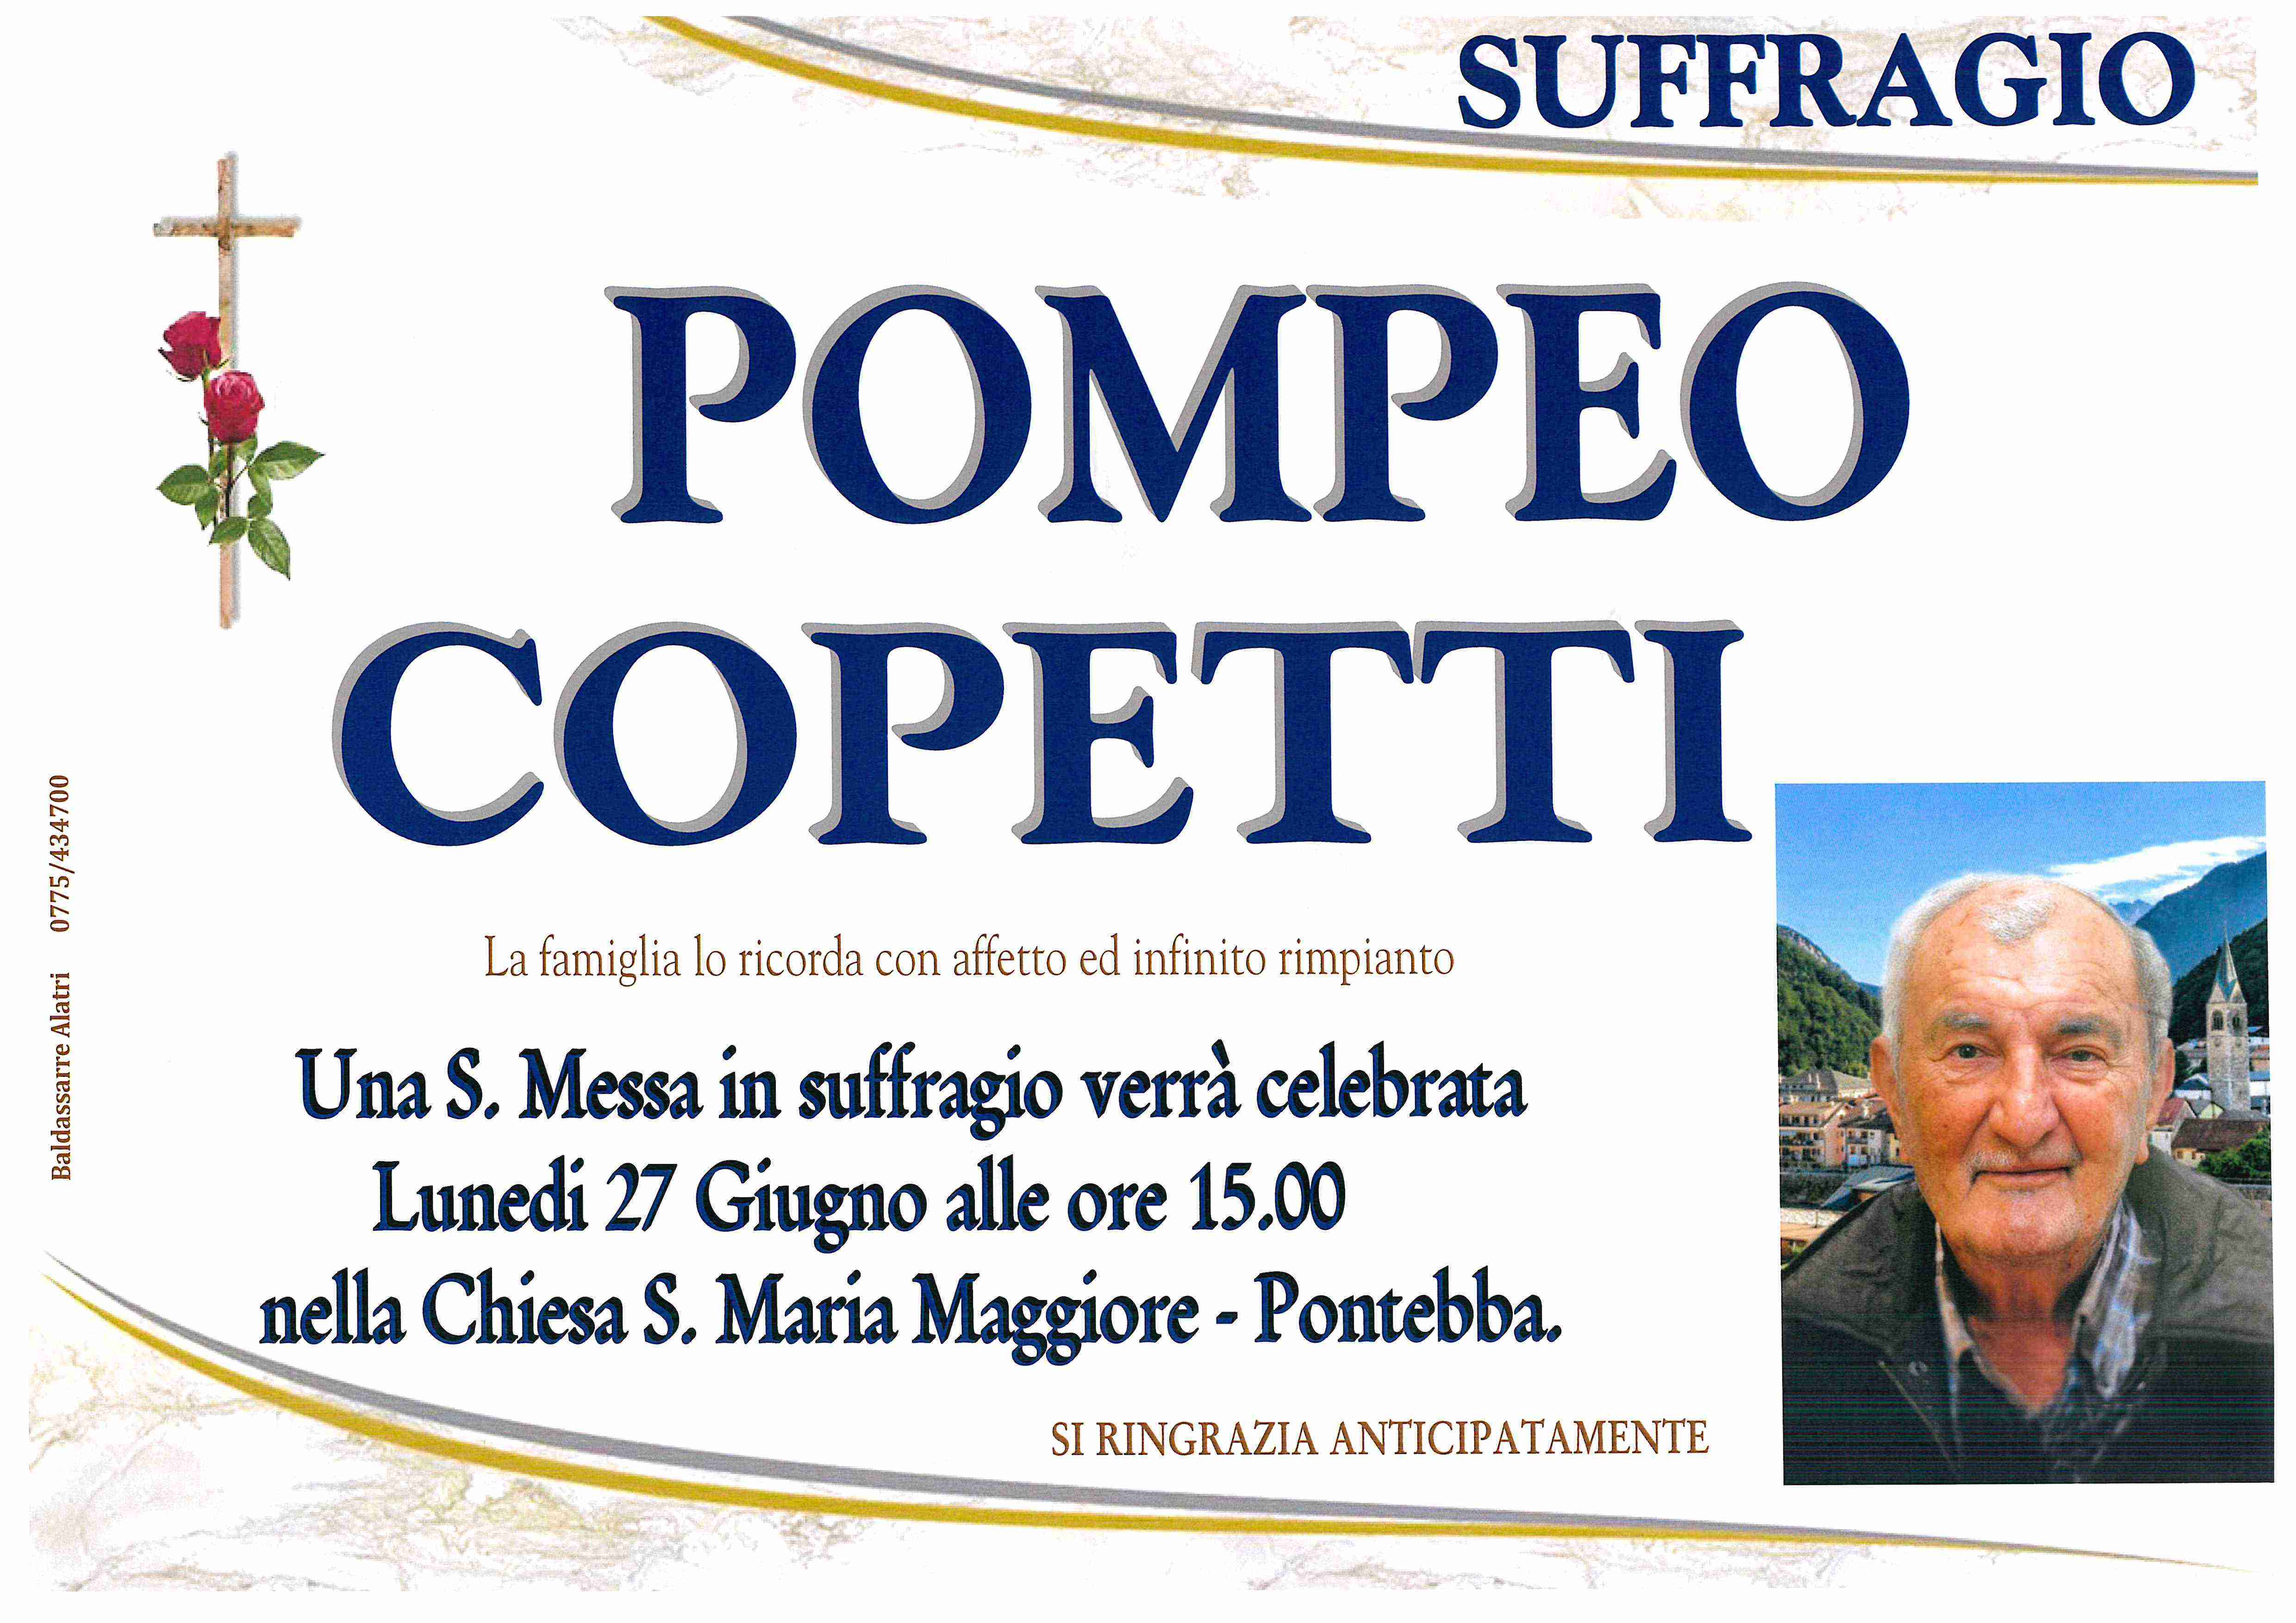 Pompeo Copetti